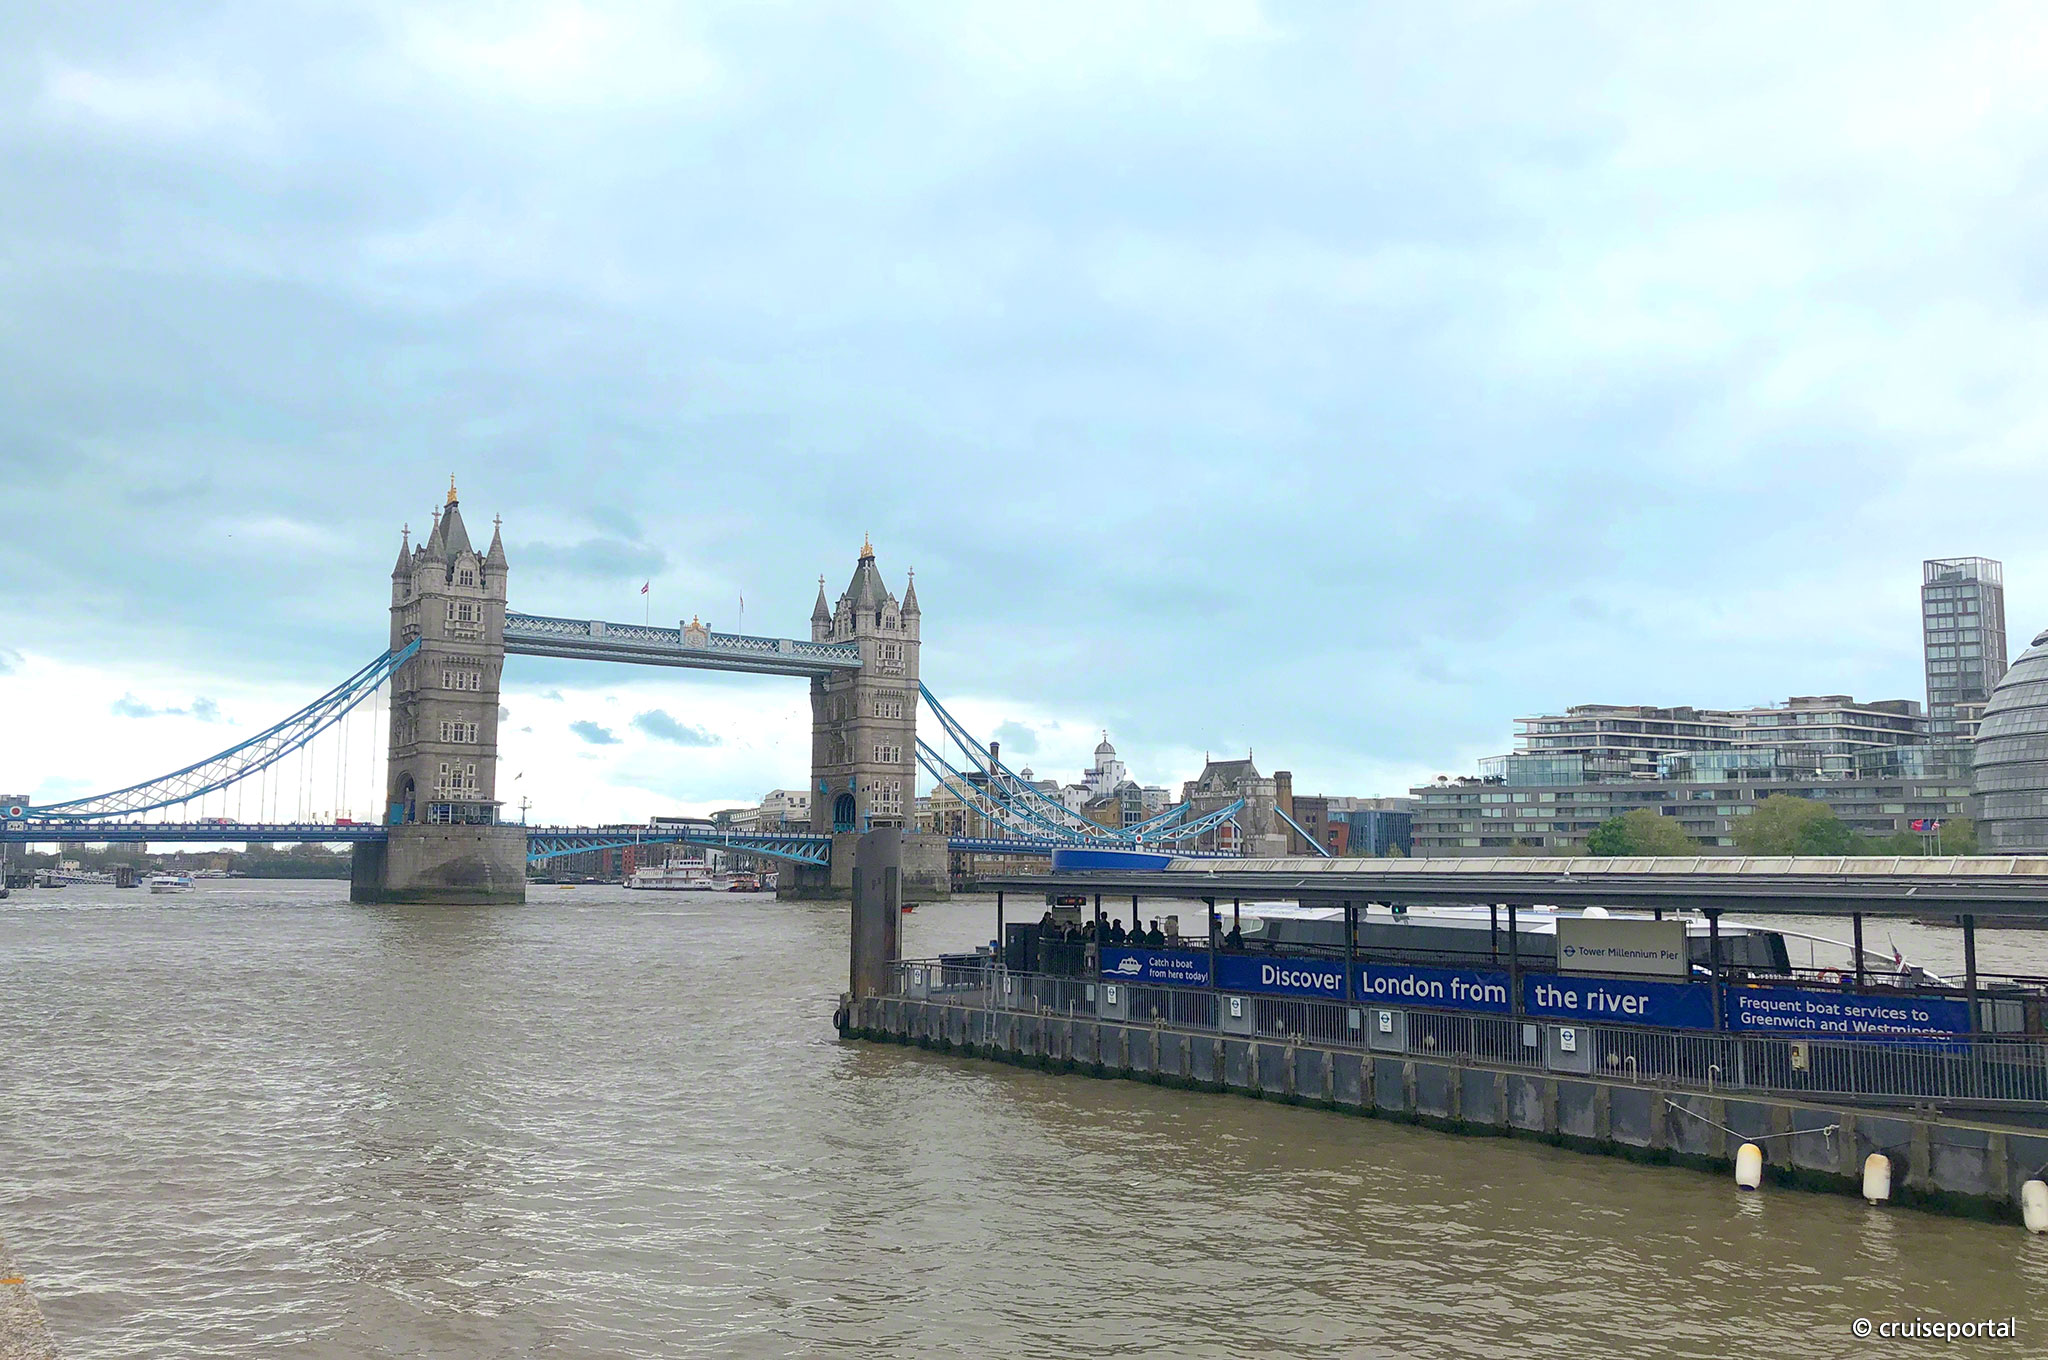 London Bridge